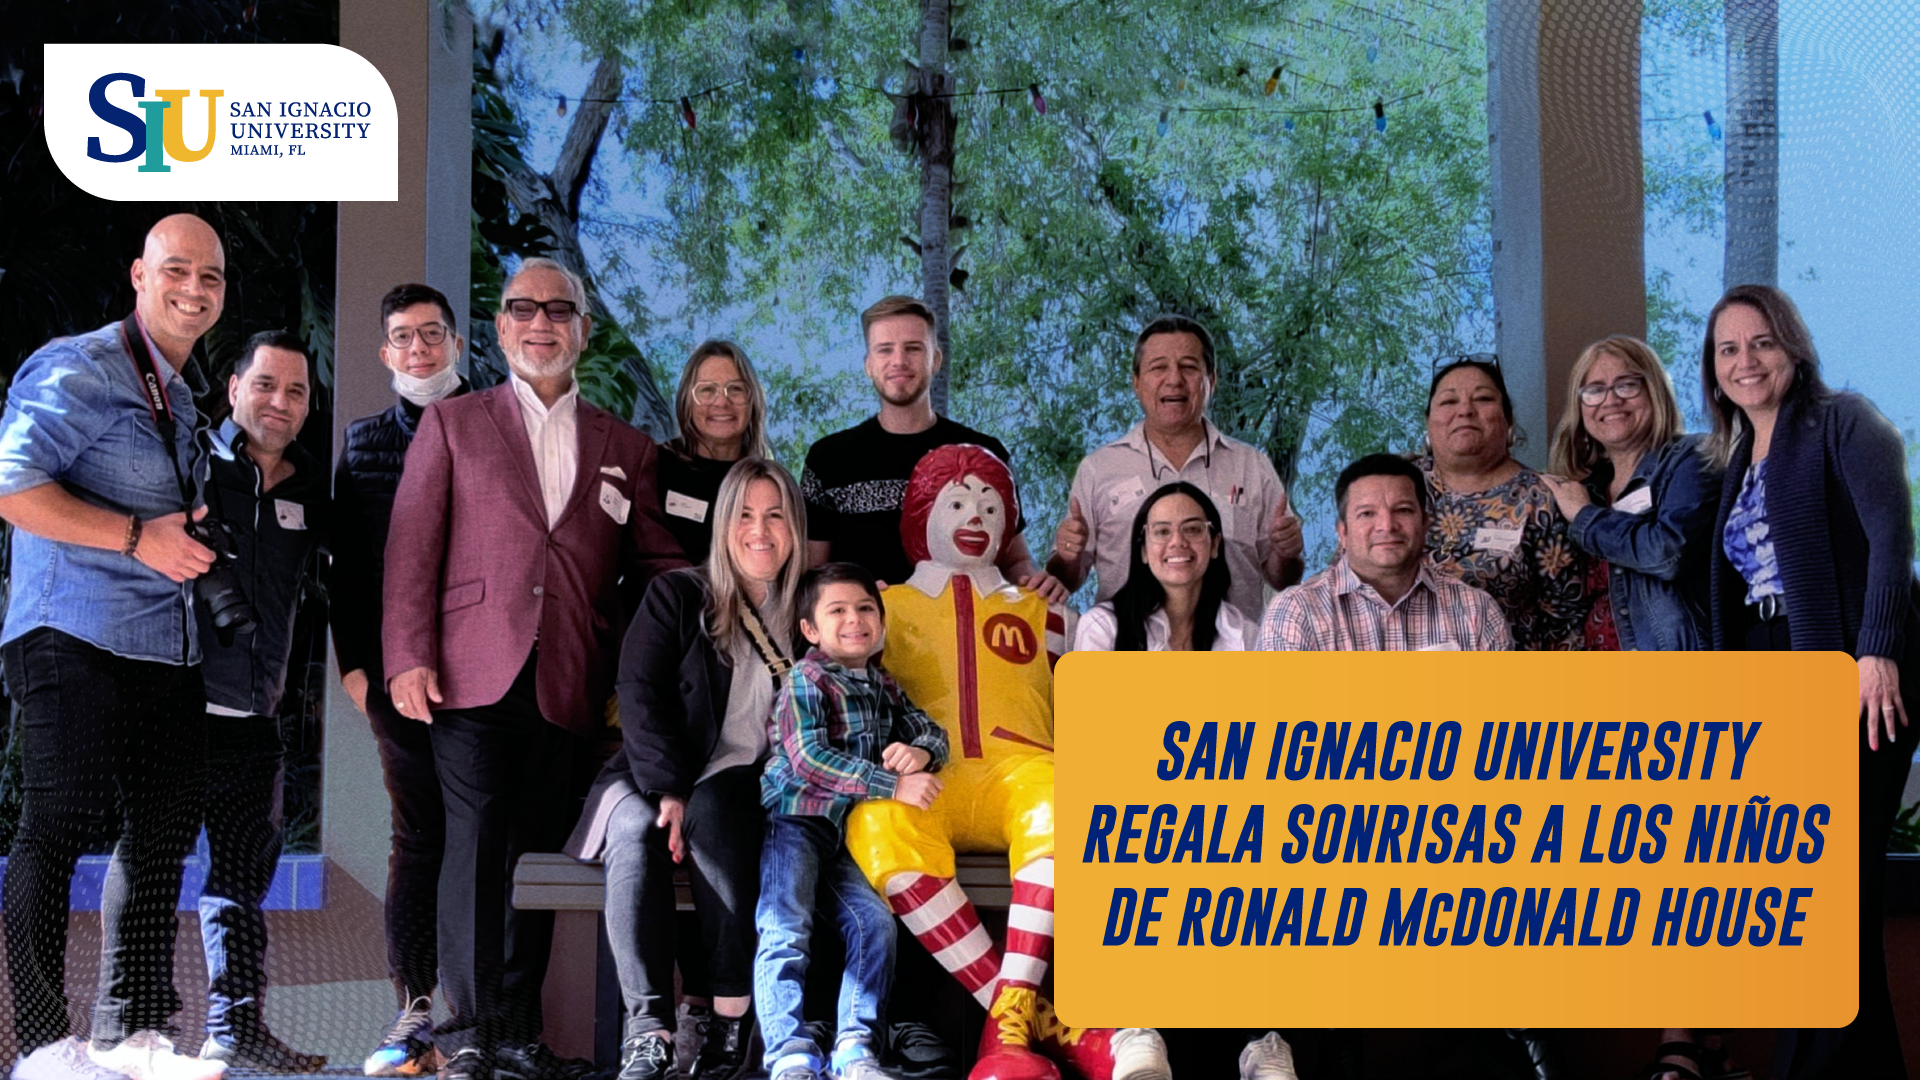 San Ignacio University regala sonrisas a los niños hospitalizados en Ronald McDonald House en South Florida.